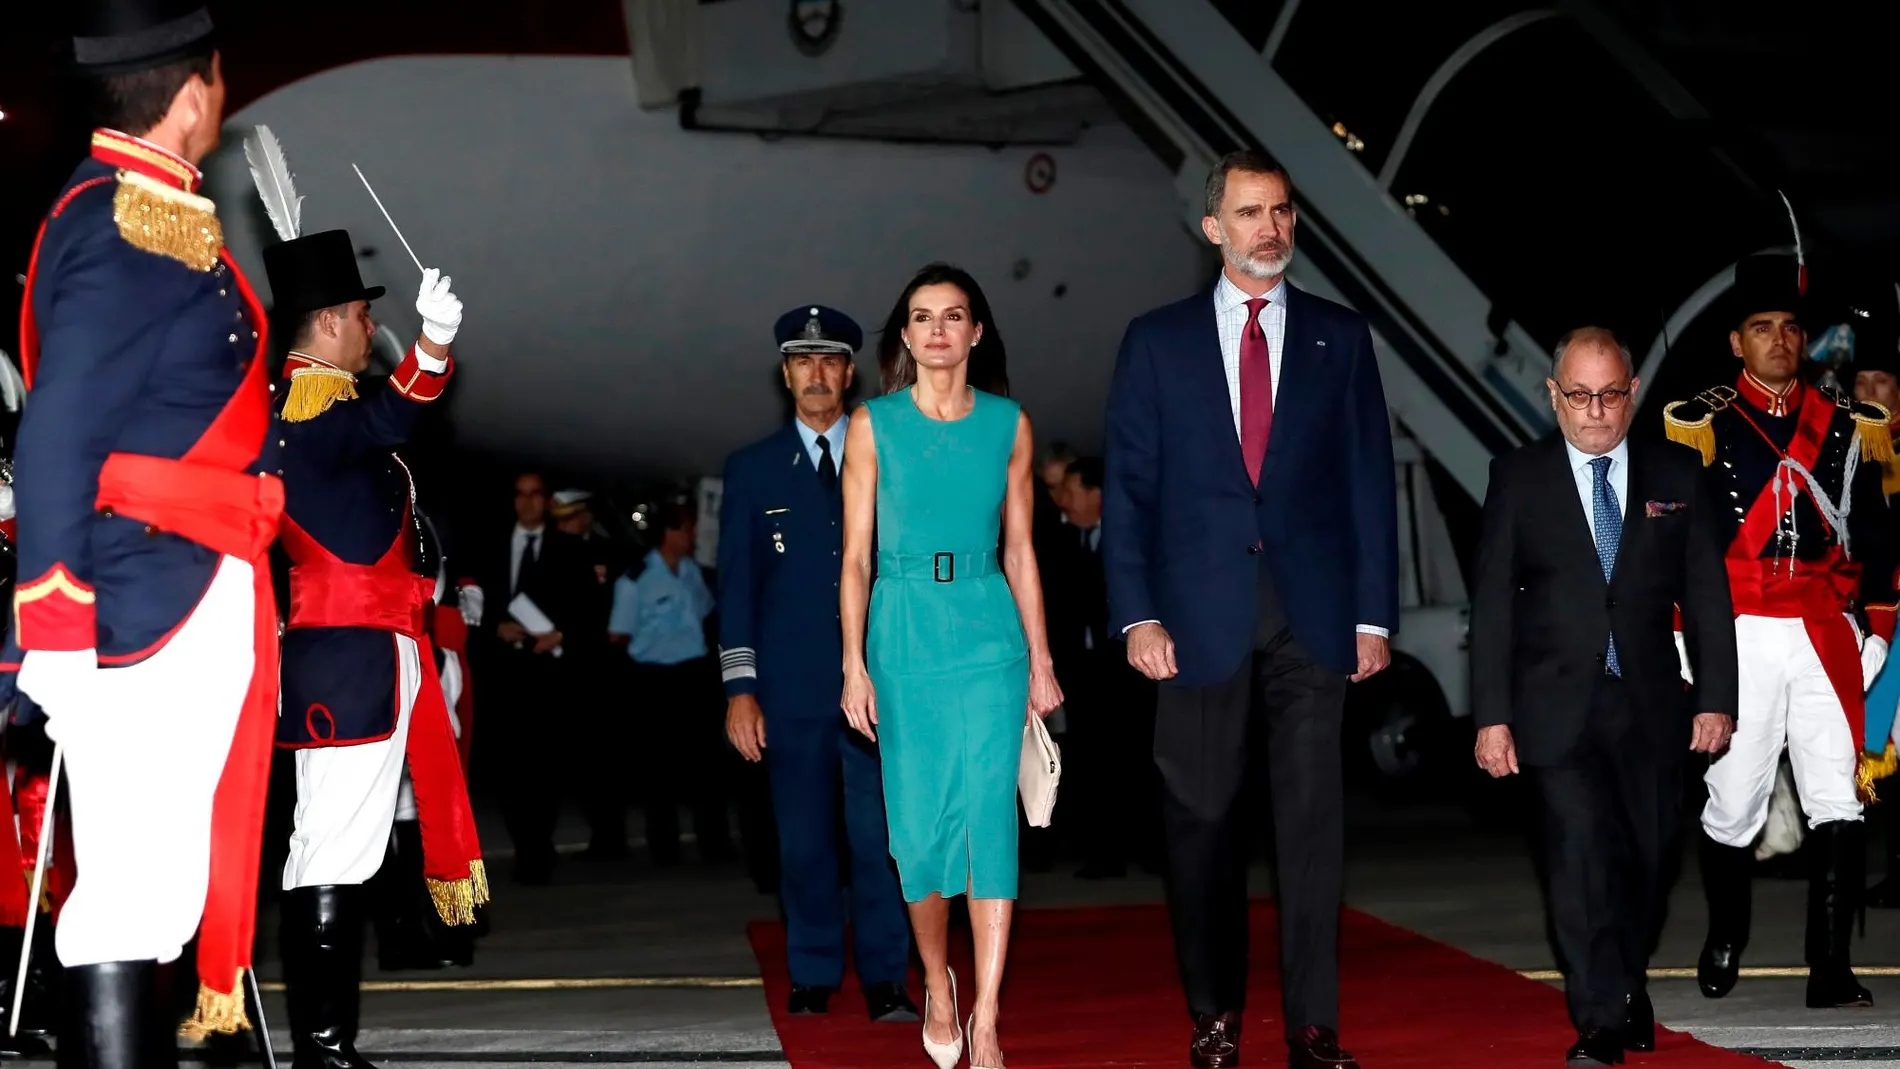 Los Reyes de España Felipe VI (c) y Letizia (c.i) caminan en medio de una guardia de honor luego de ser recibidos por el ministro de Relaciones Exteriores de Argentina, Jorge Faurie